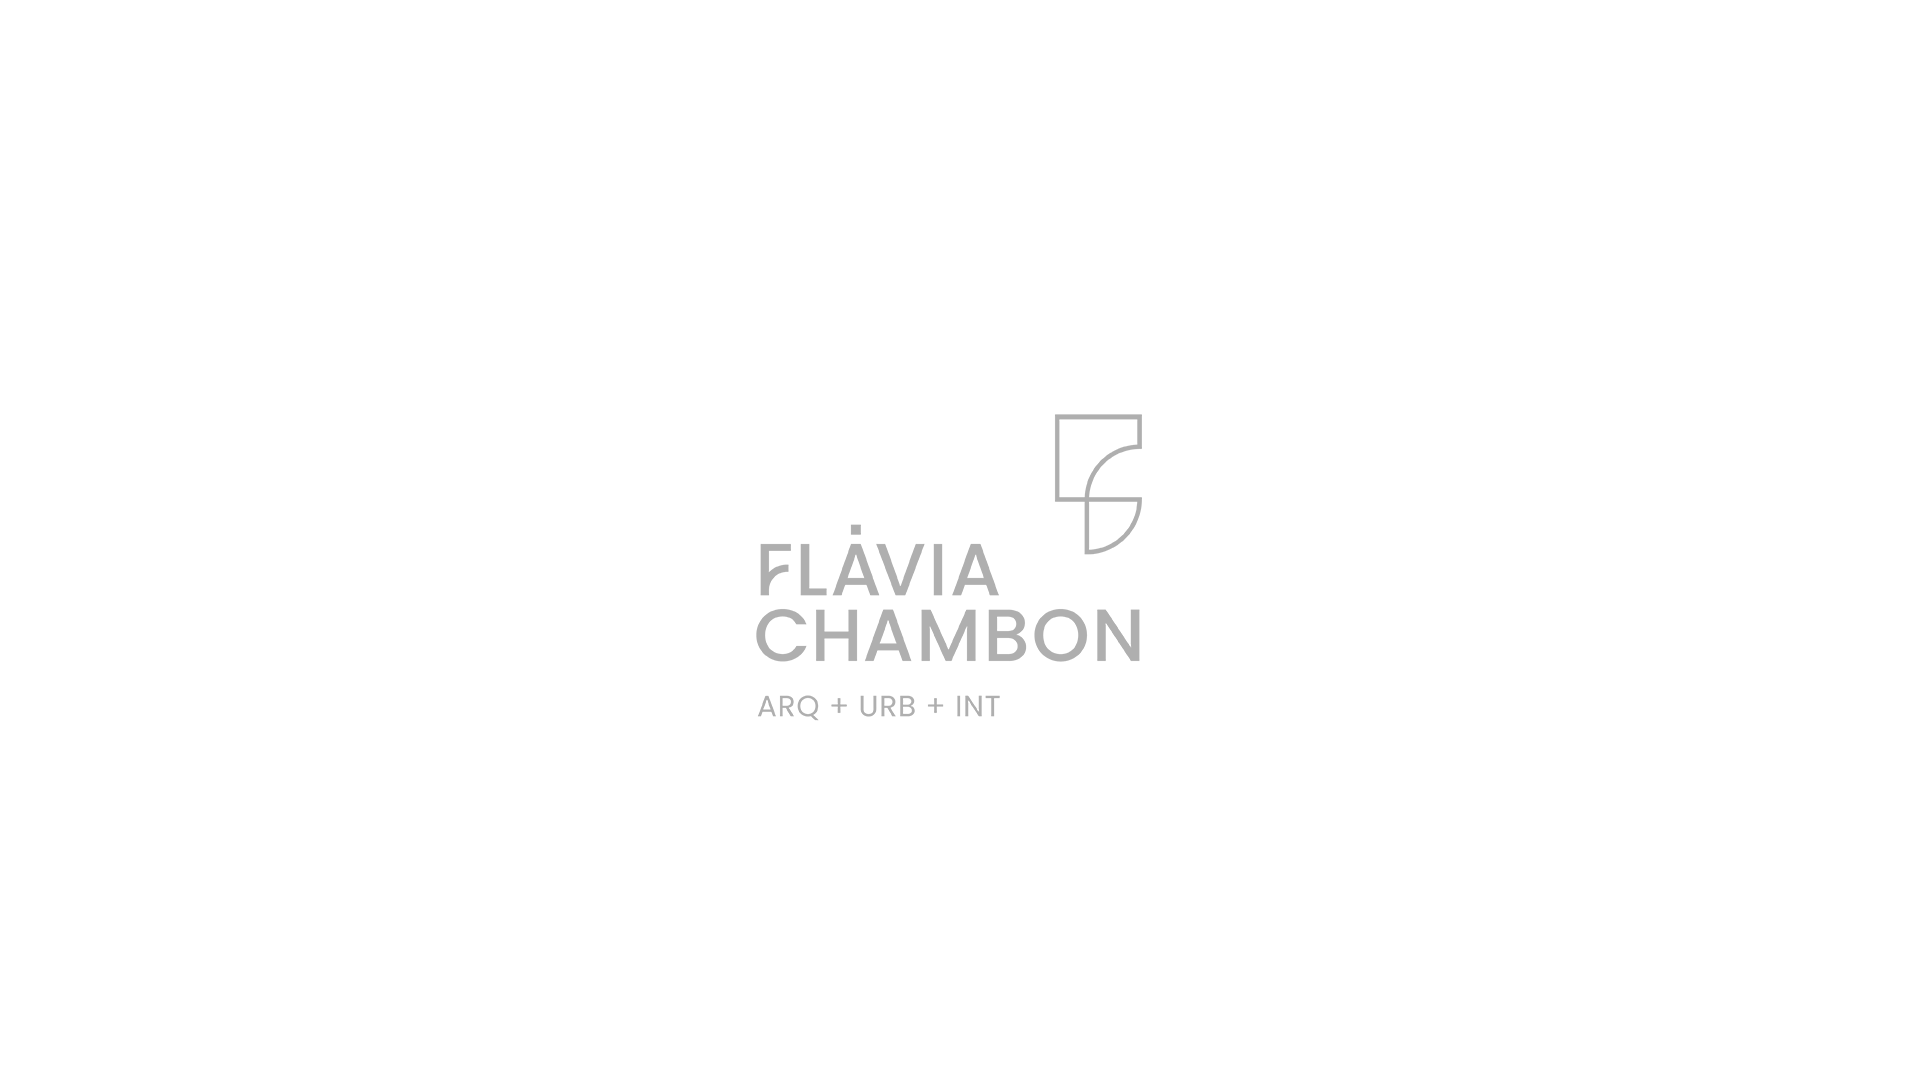 Apresentação_Flavia-Chambon_0421-copy